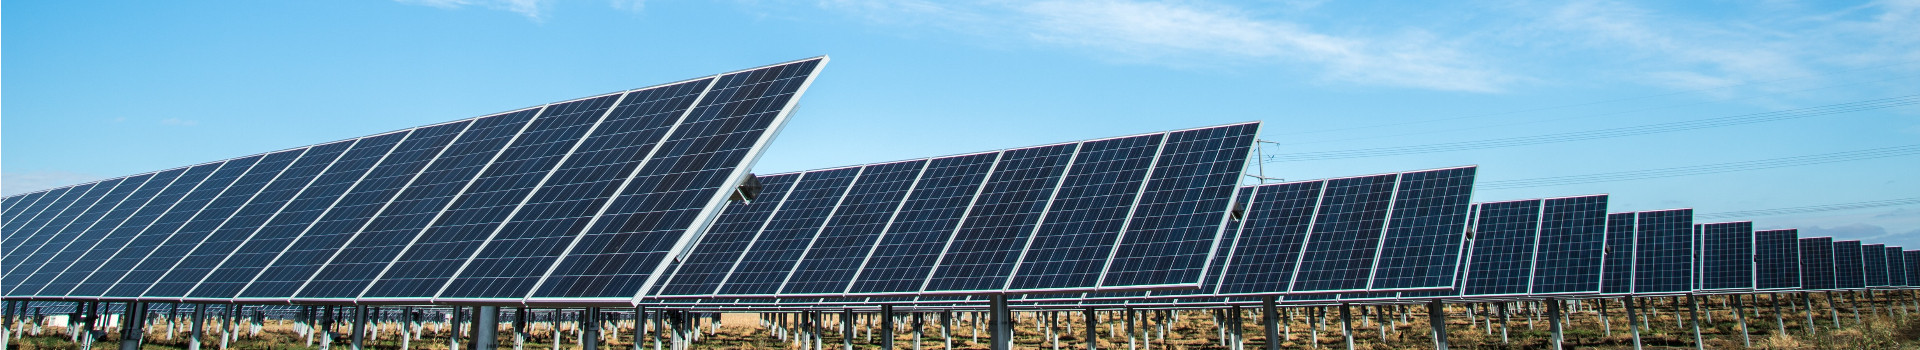 Oleme pühendunud taastuvenergia lahendustele, kuid peamiselt päikesepaneelide paigaldamisele. Meie müügi- ja paigaldusmeeskond koosneb kogenud spetsialistidest, kes on olnud tegevad päikeseenergeetika alal üle 10 aasta